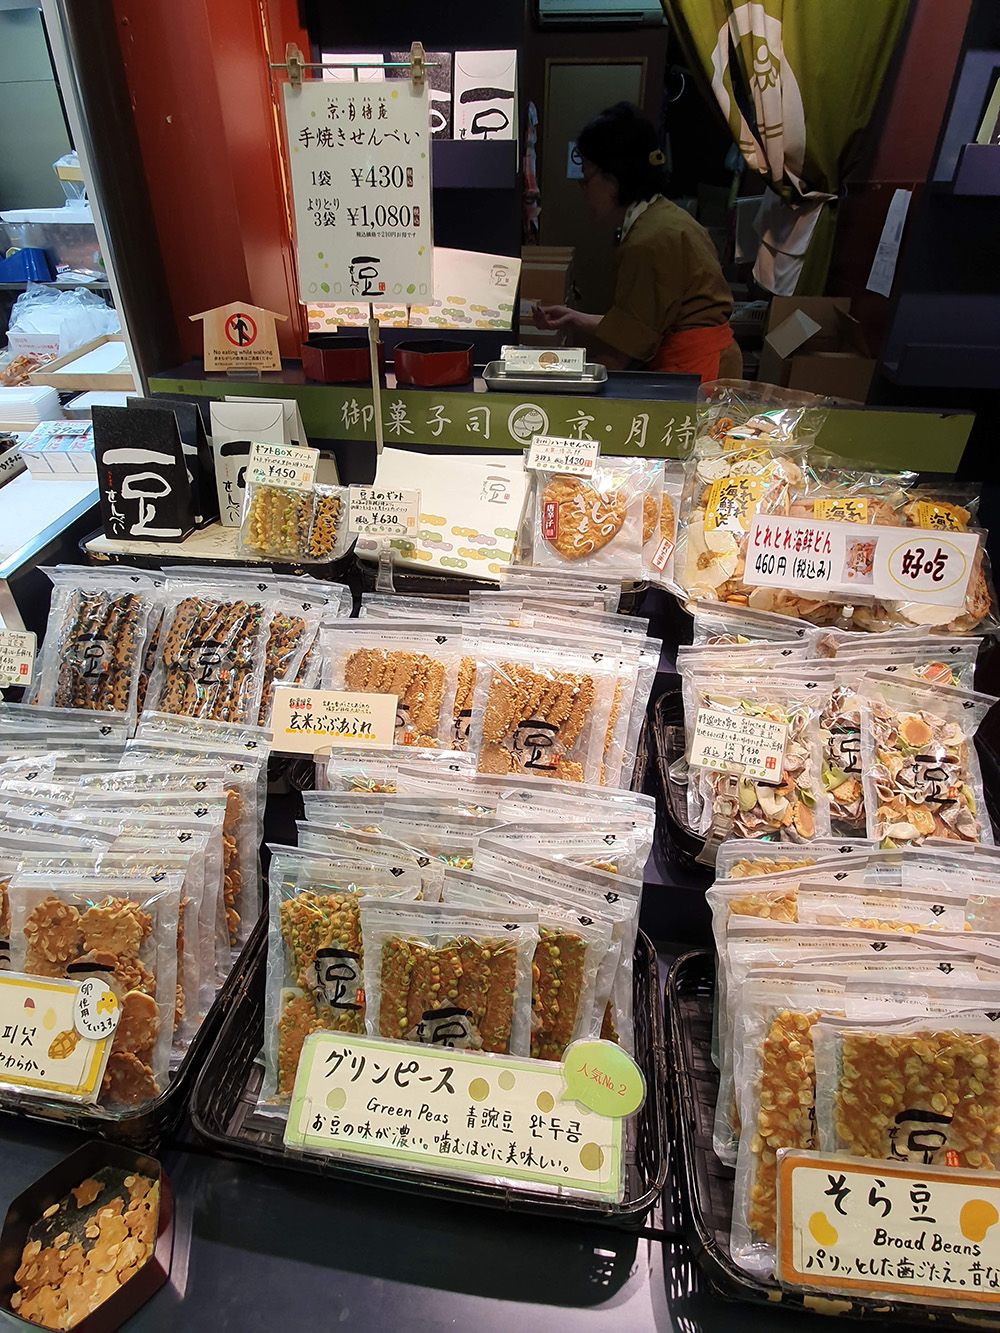 שוק האוכל Nishiki Market